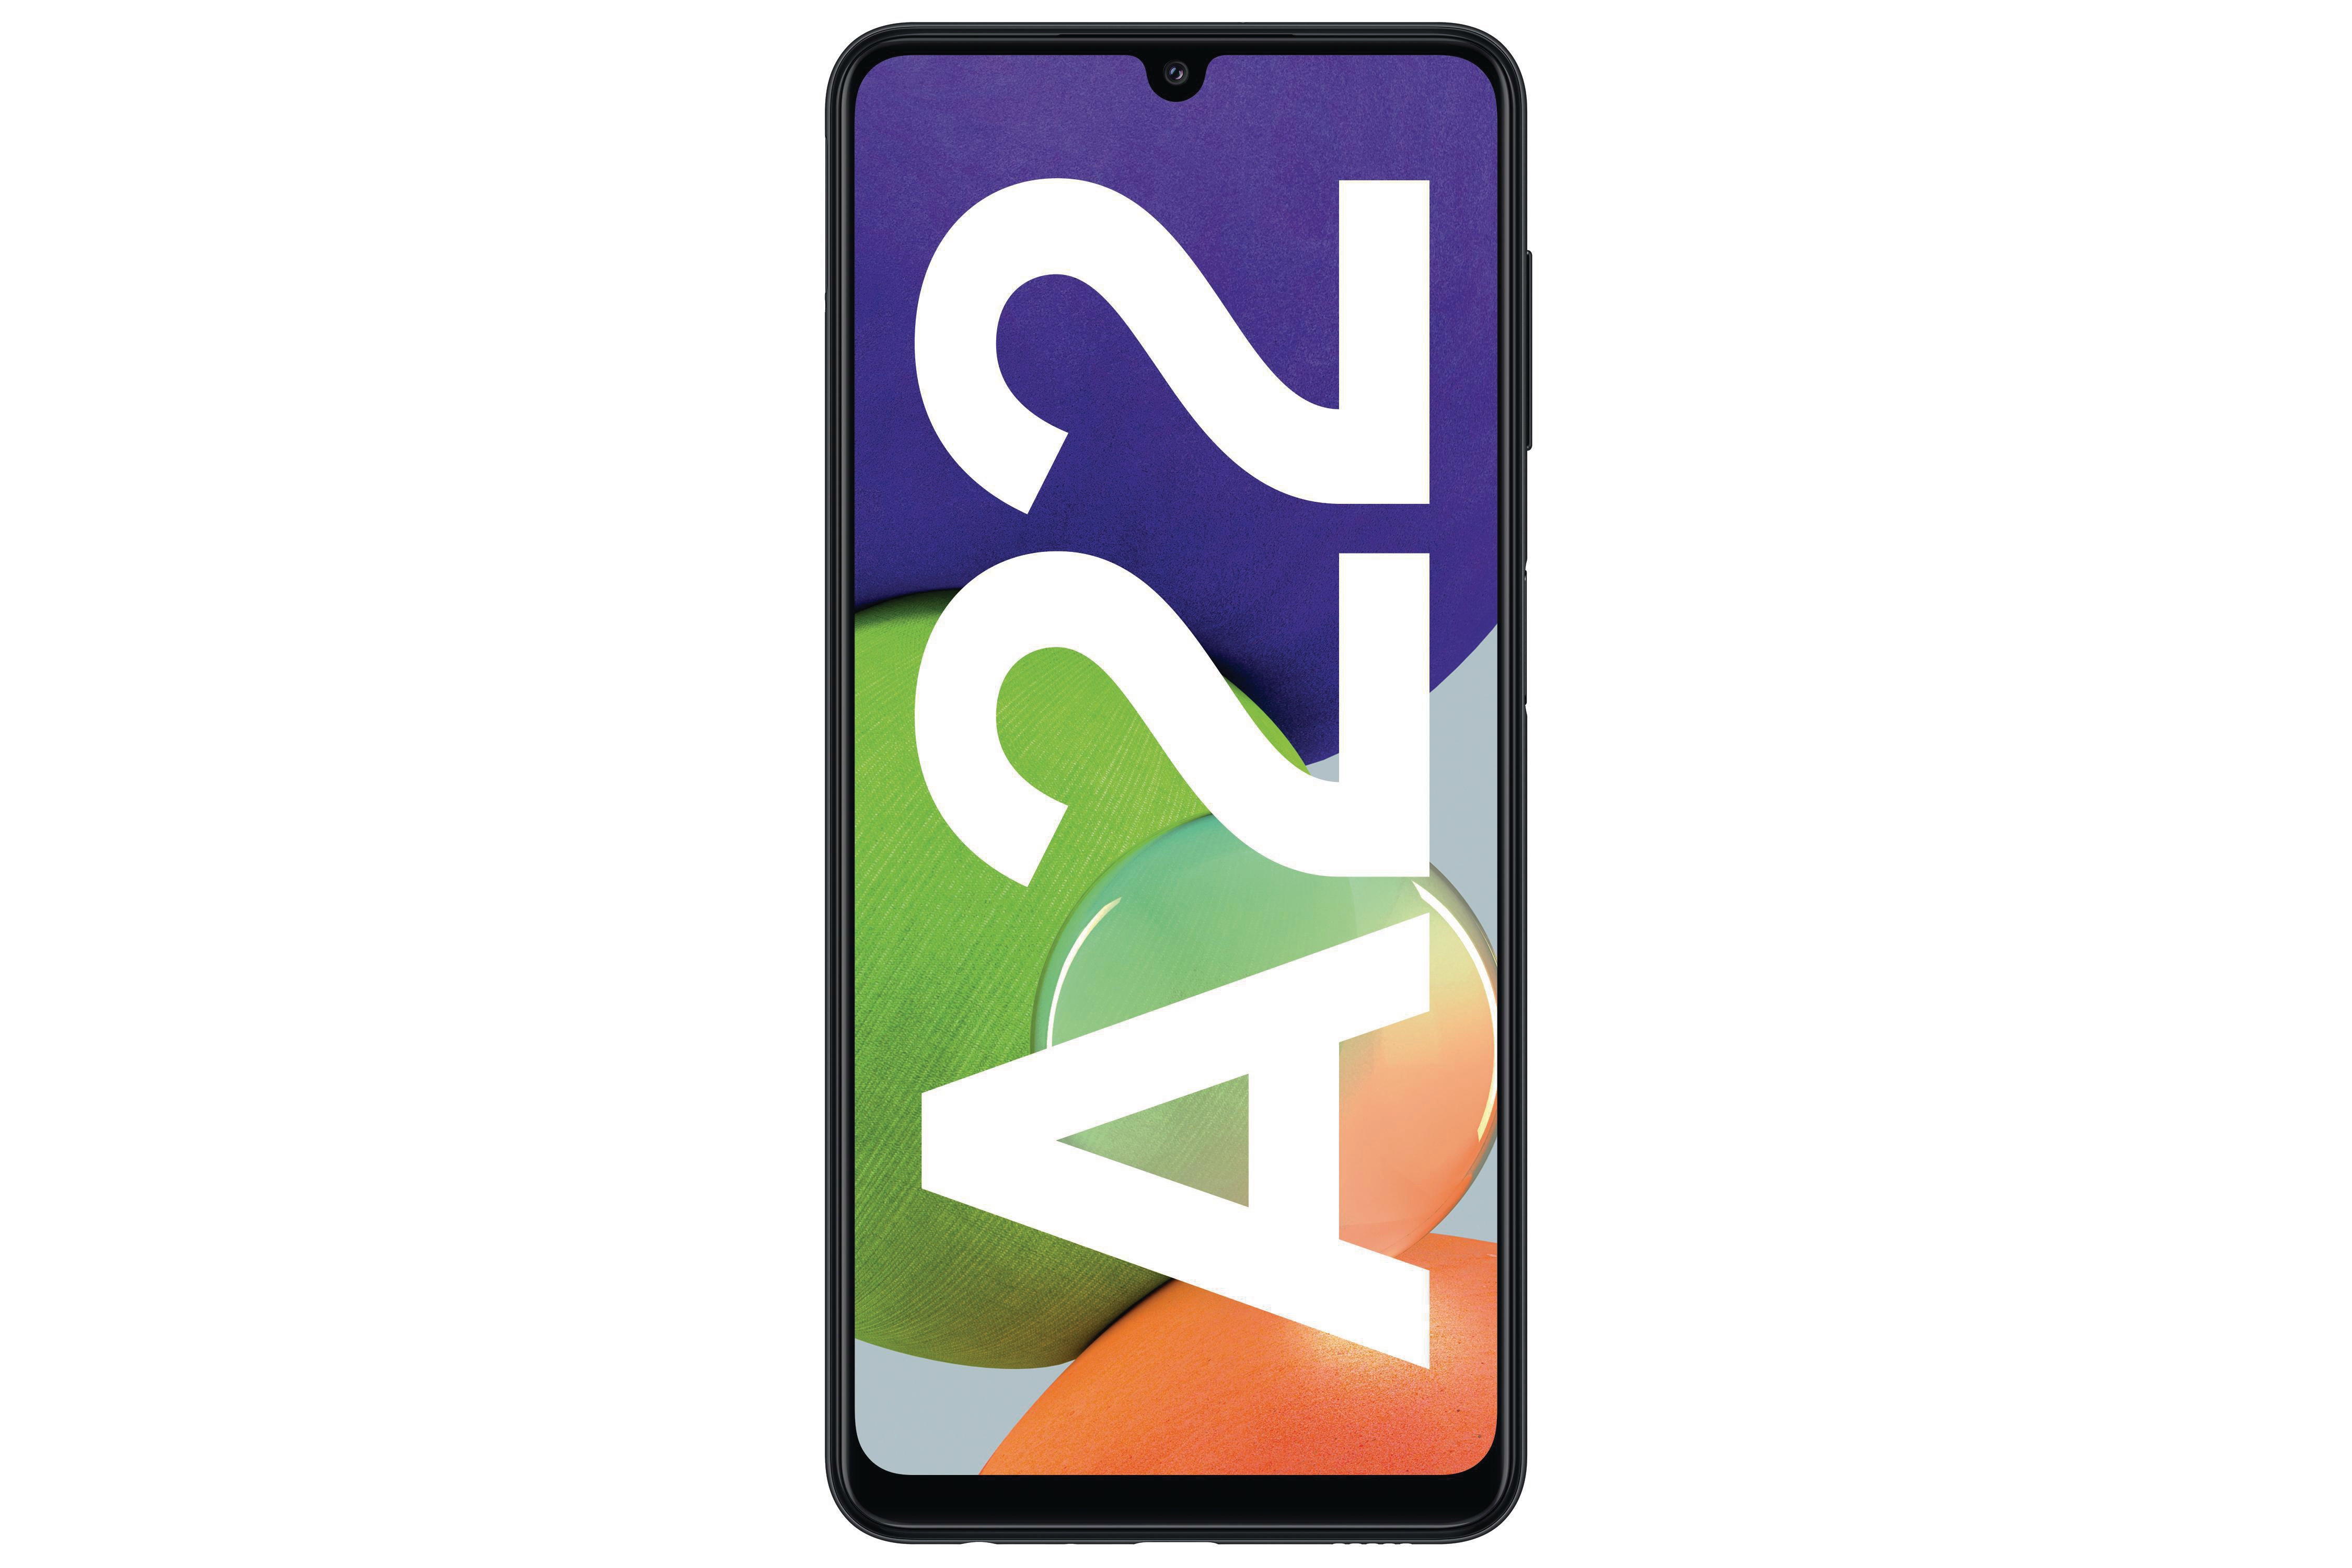 SIM 128 SAMSUNG A22 Black GB Galaxy Dual